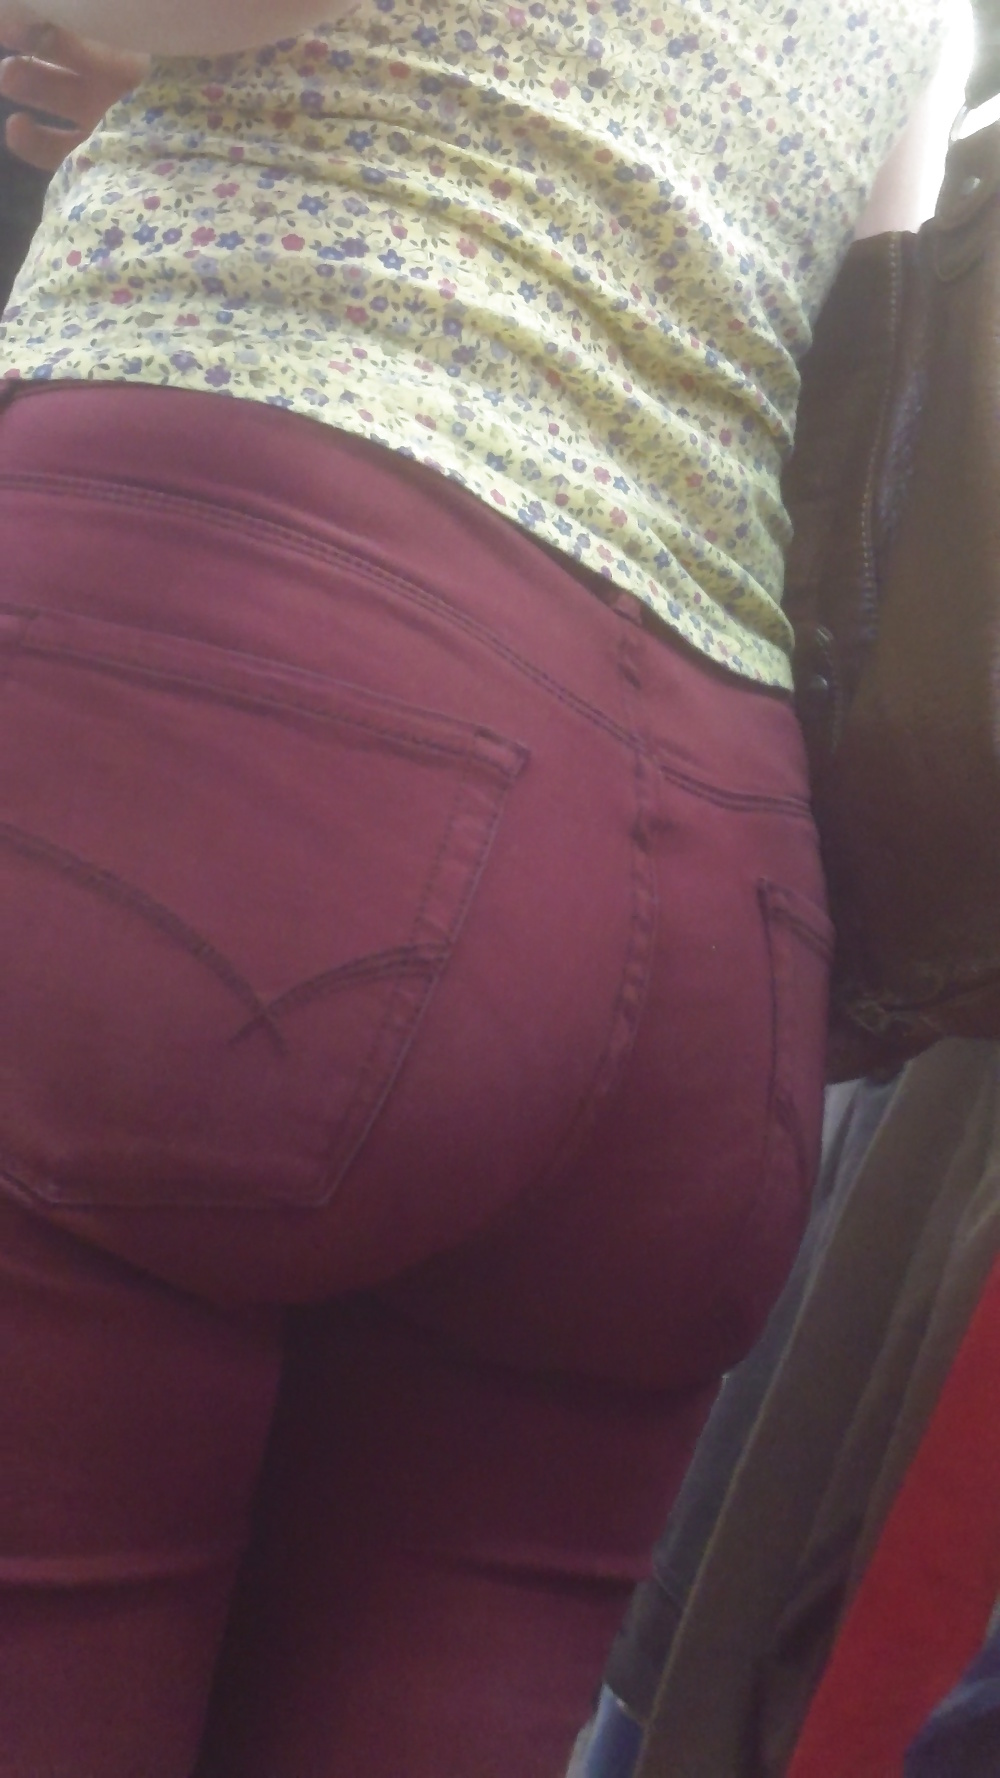 Popular teen girls ass & butt in jeans Part 7 #39943349